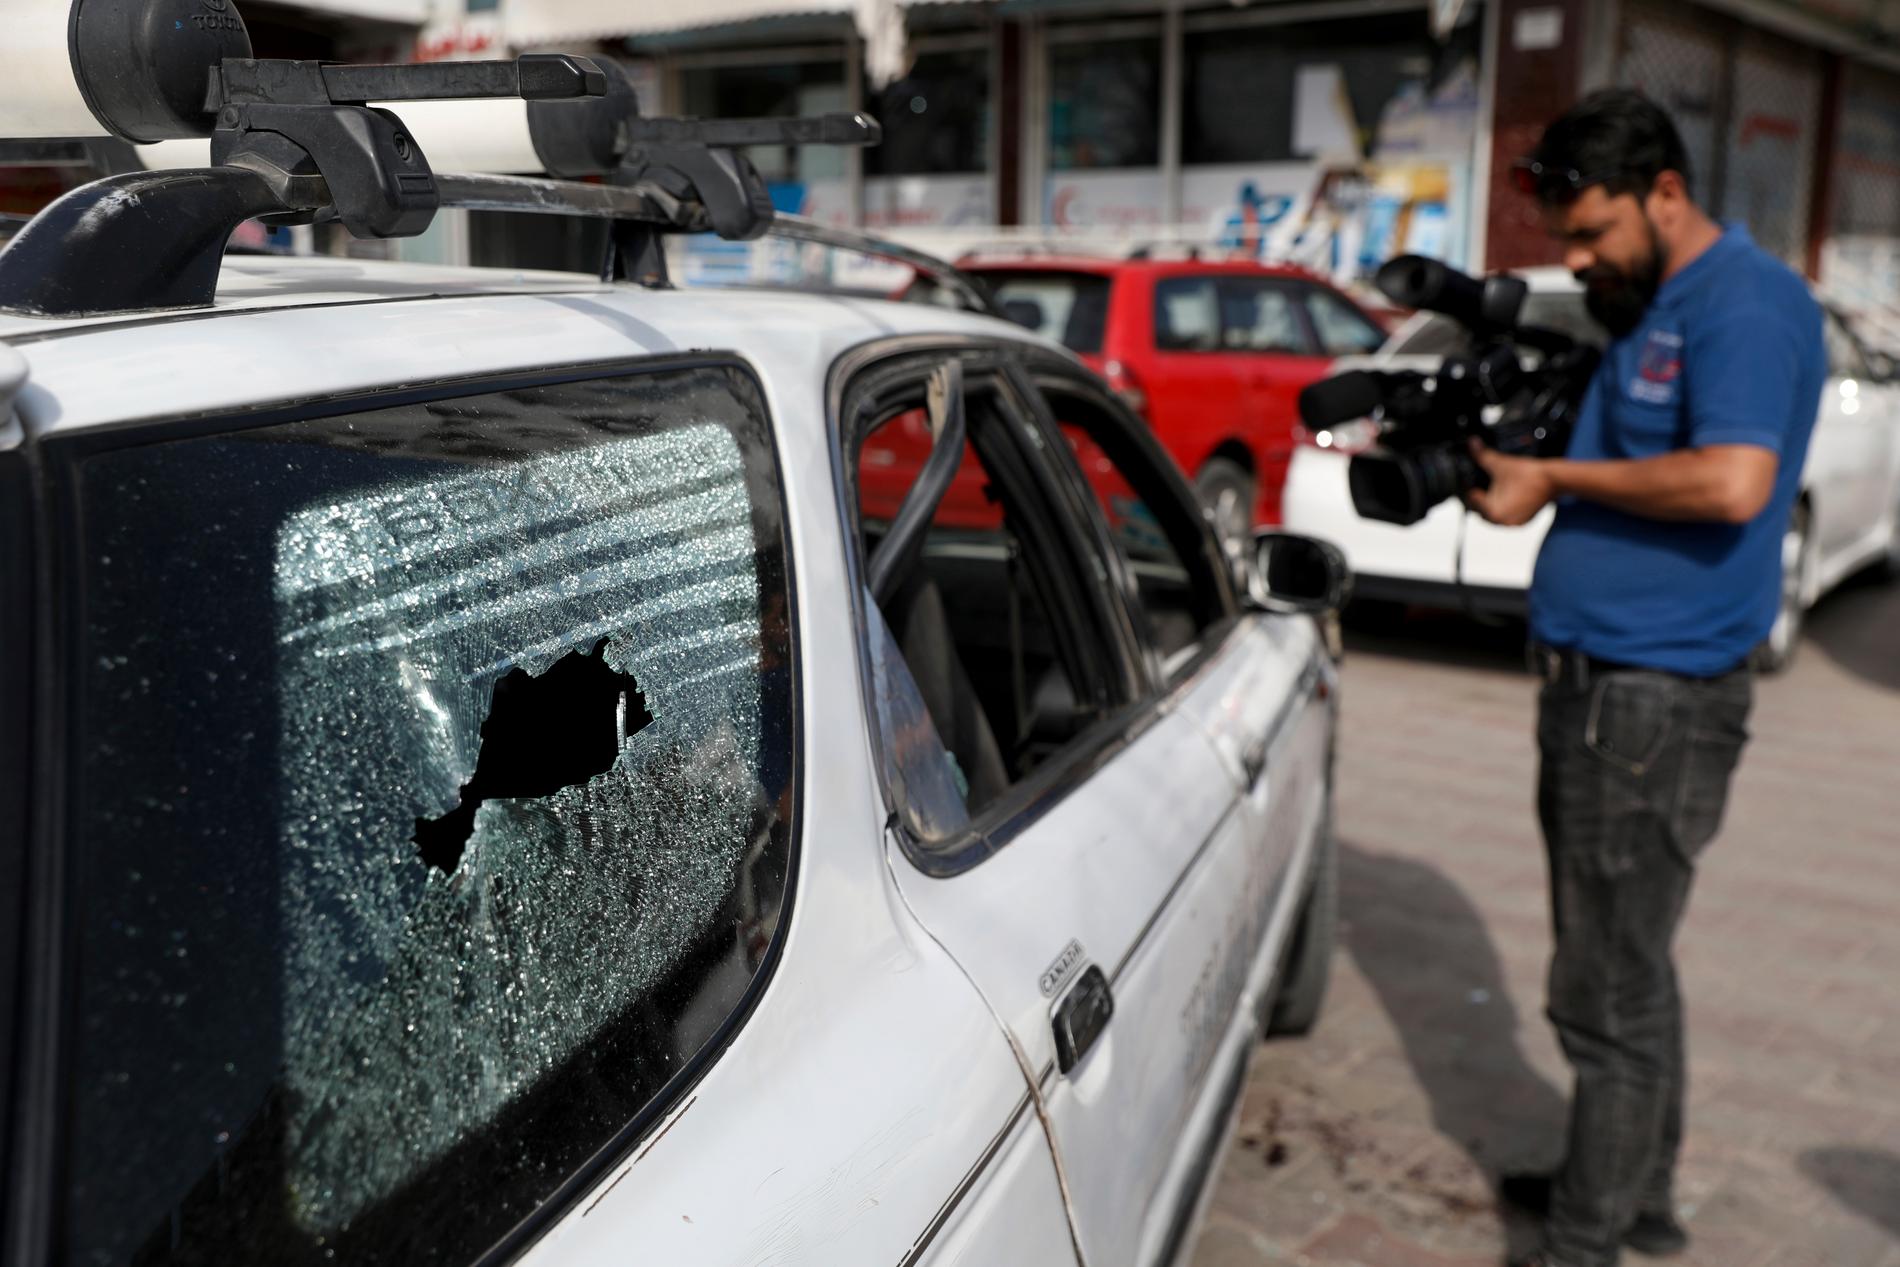 Regeringens informationschef Dawa Khan Menapal sköts ihjäl när han färdades i bil i den afghanska huvudstaden Kabul på fredagen.